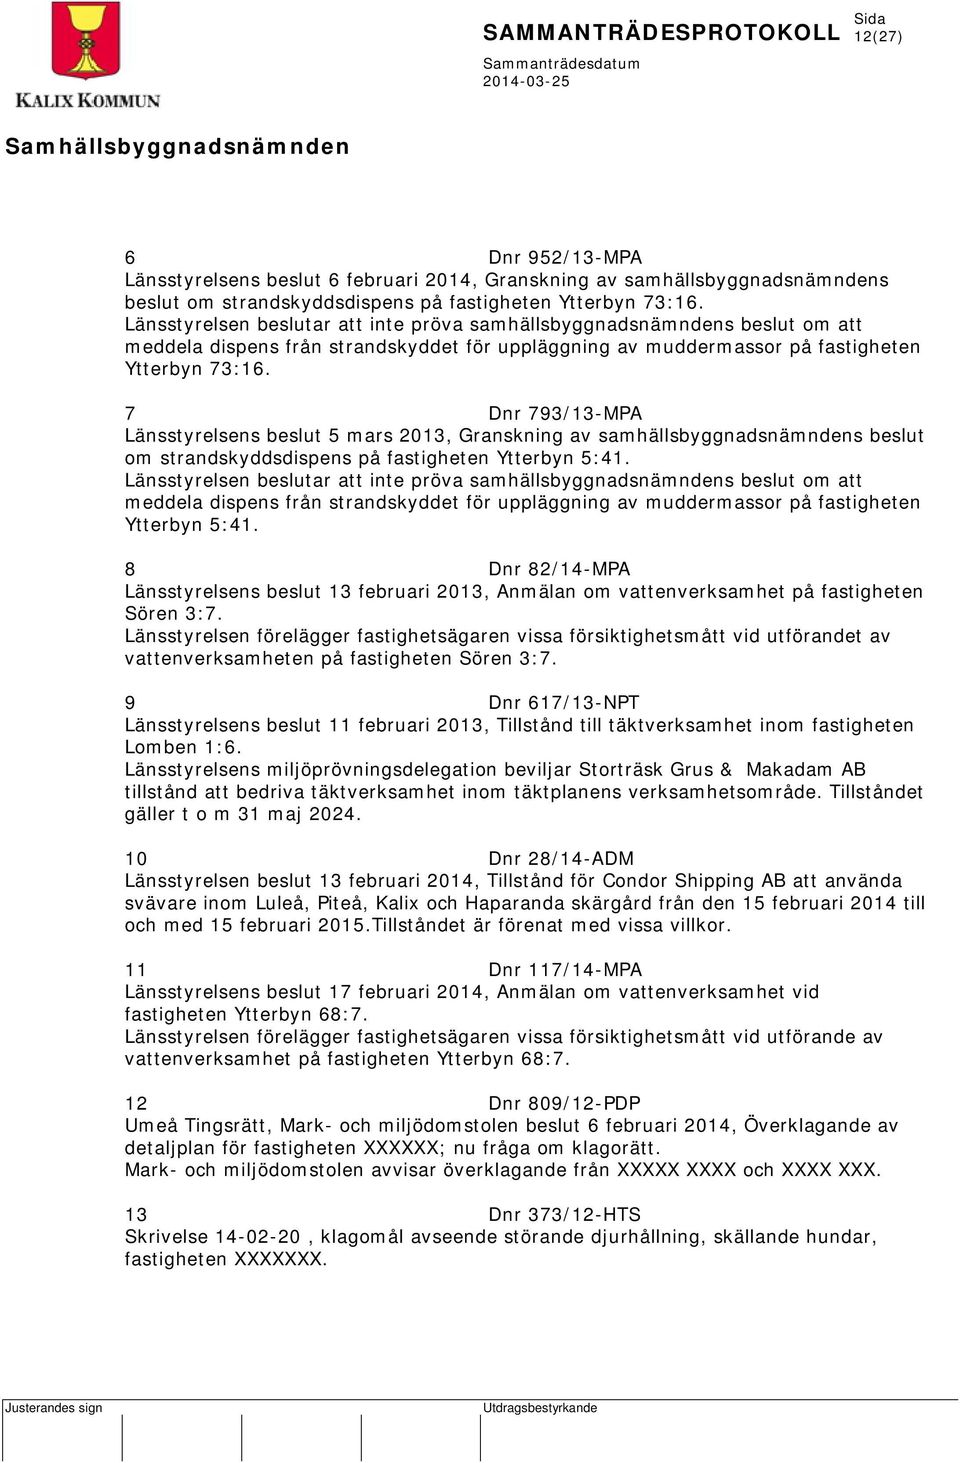 7 Dnr 793/13-MPA Länsstyrelsens beslut 5 mars 2013, Granskning av samhällsbyggnadsnämndens beslut om strandskyddsdispens på fastigheten Ytterbyn 5:41.